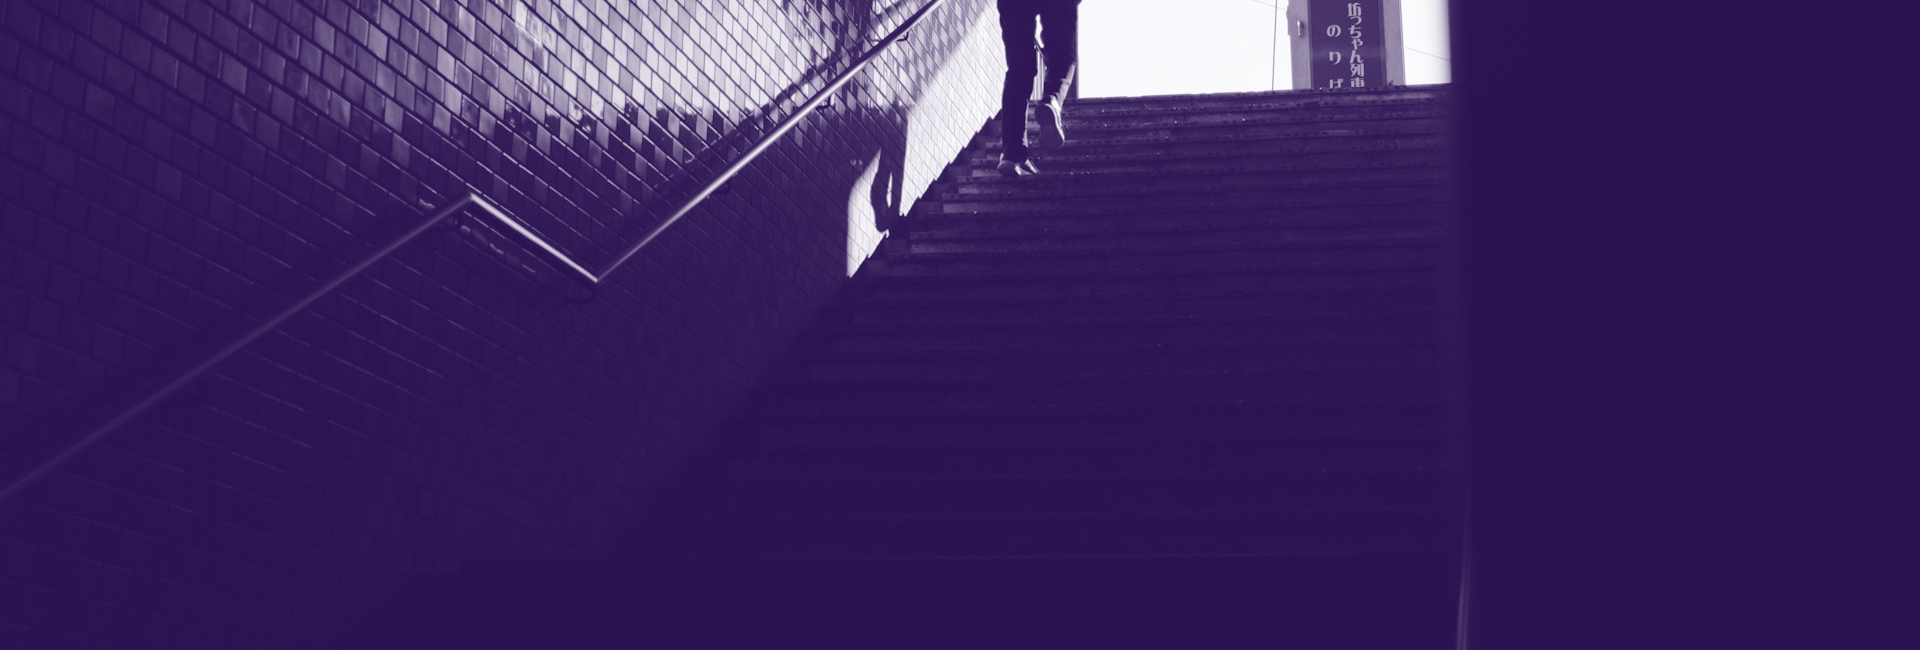 Obrázok človeka na schodoch